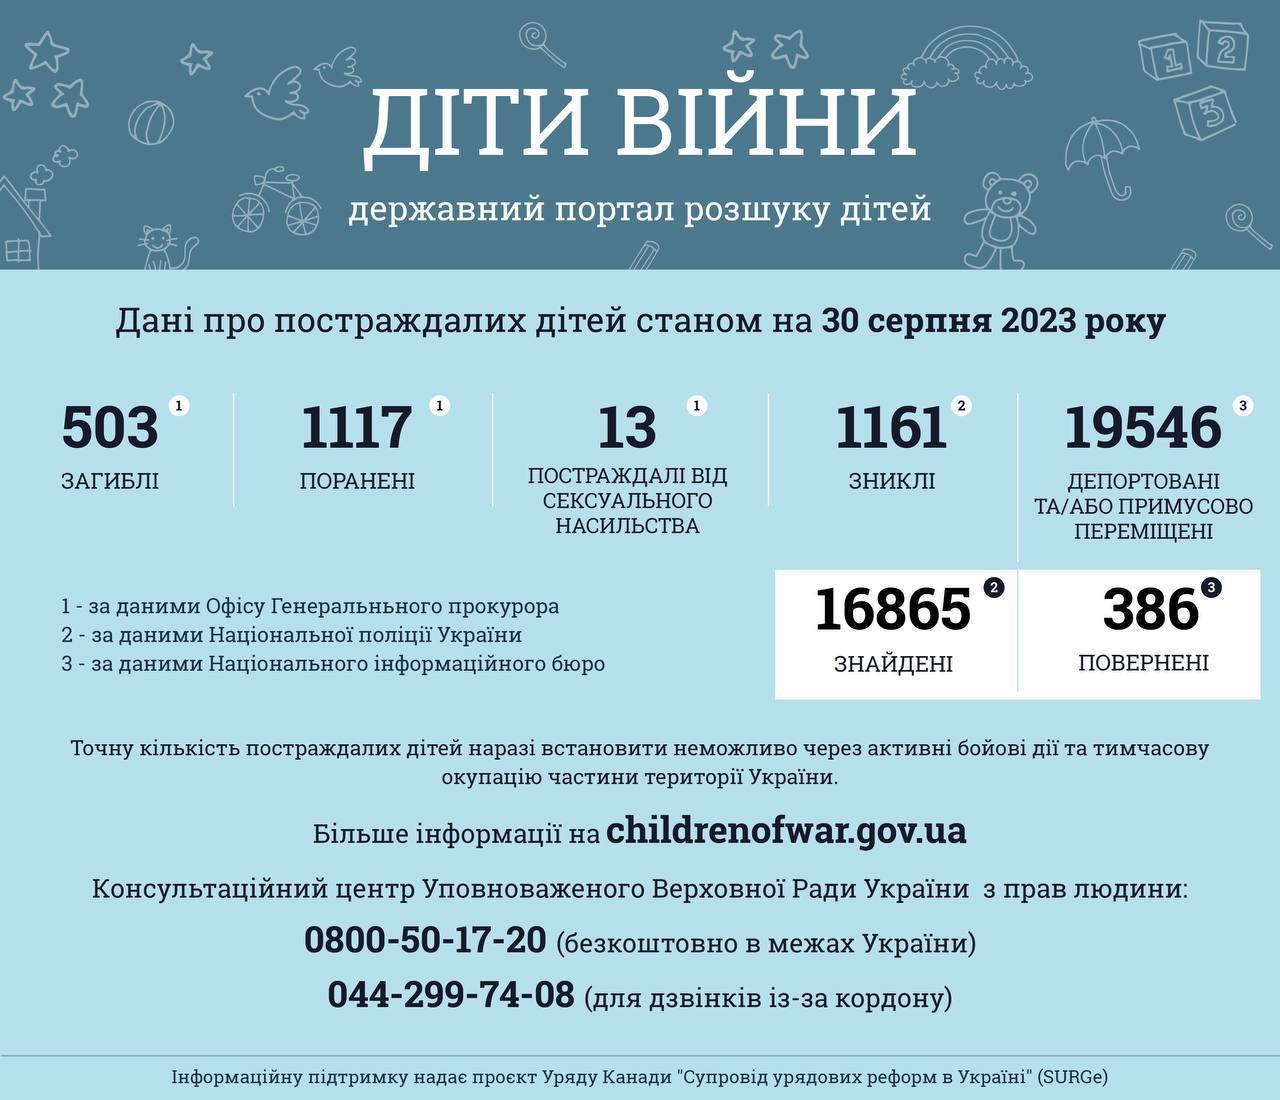 Більше ніж 1620 дітей постраждали в Україні внаслідок повномасштабної збройної агресії рф